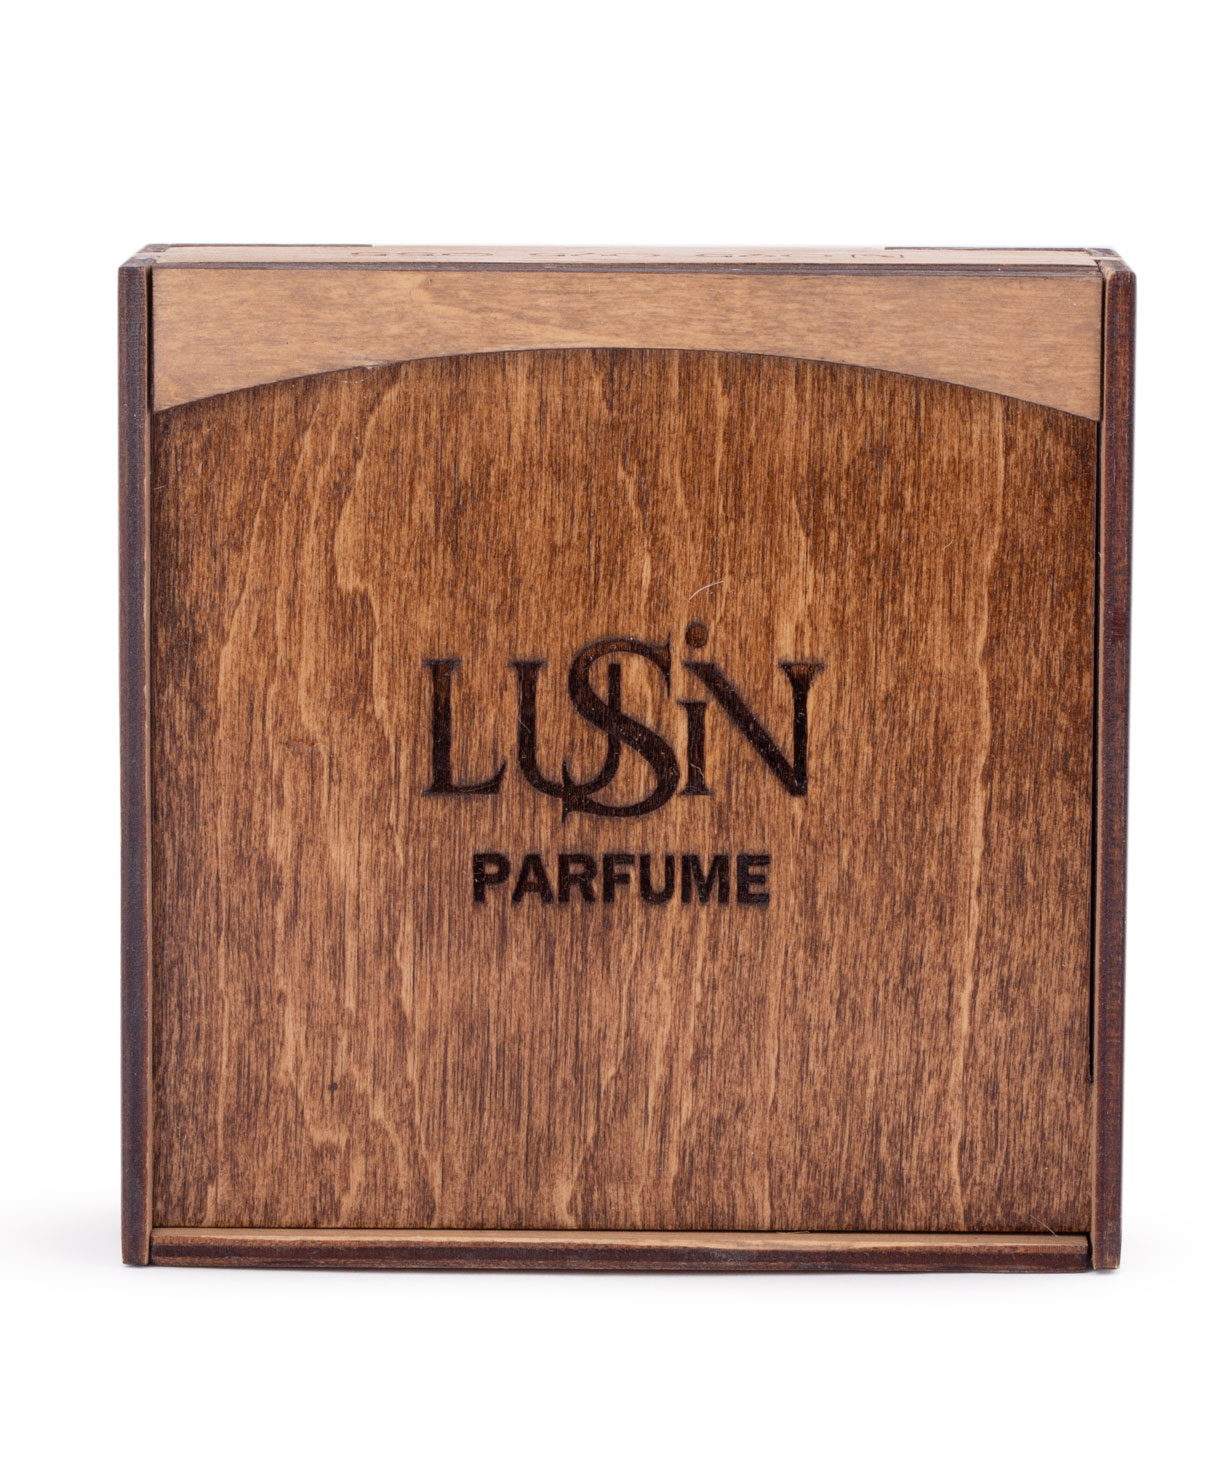 Կախազարդ «Lusin parfume» հոտավետ կենաց ծառով